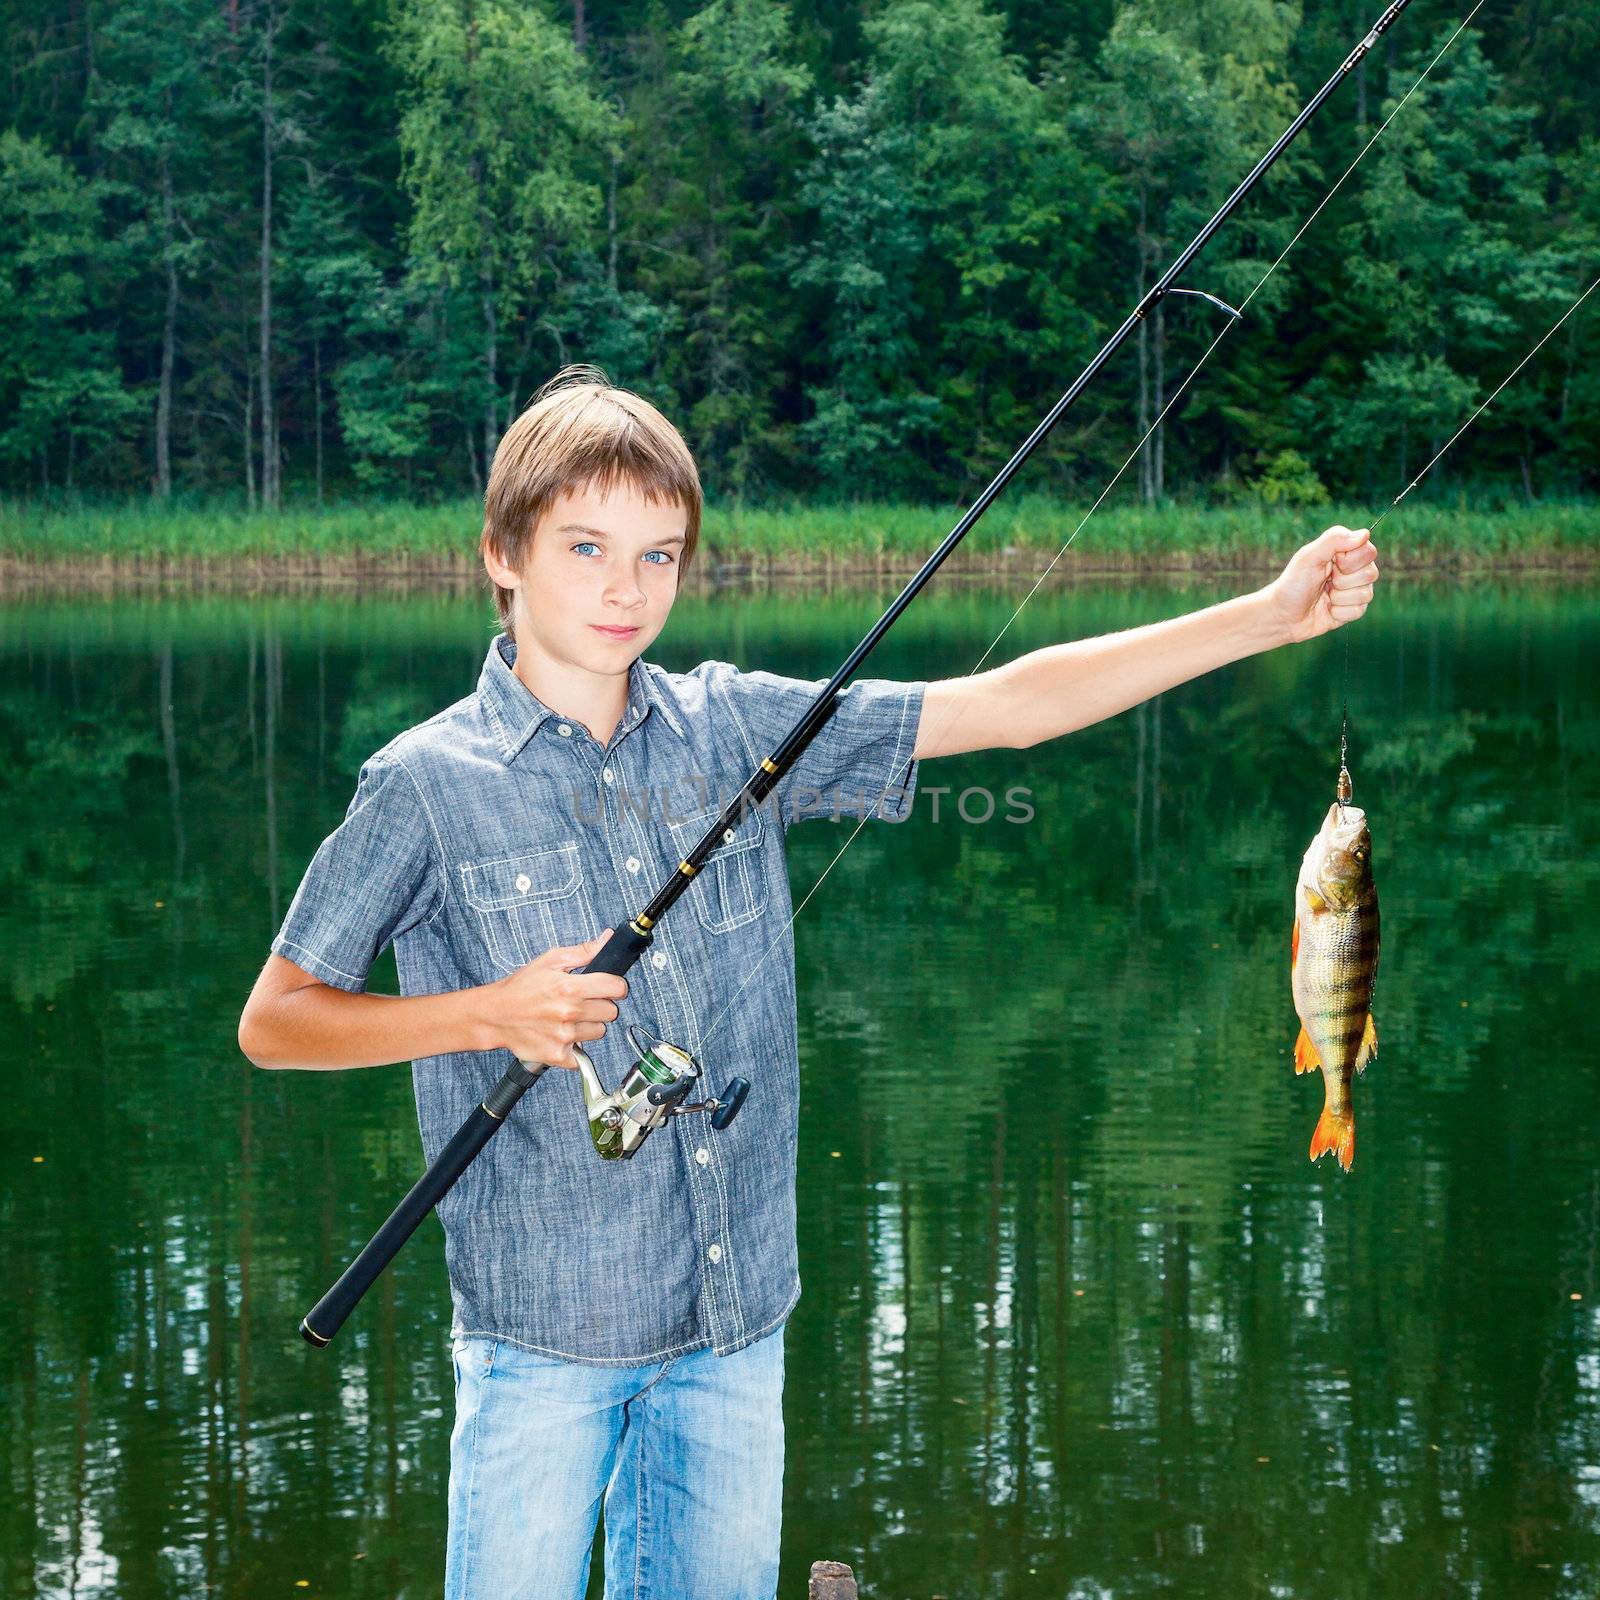 Cute boy showing fish he caught while fishing